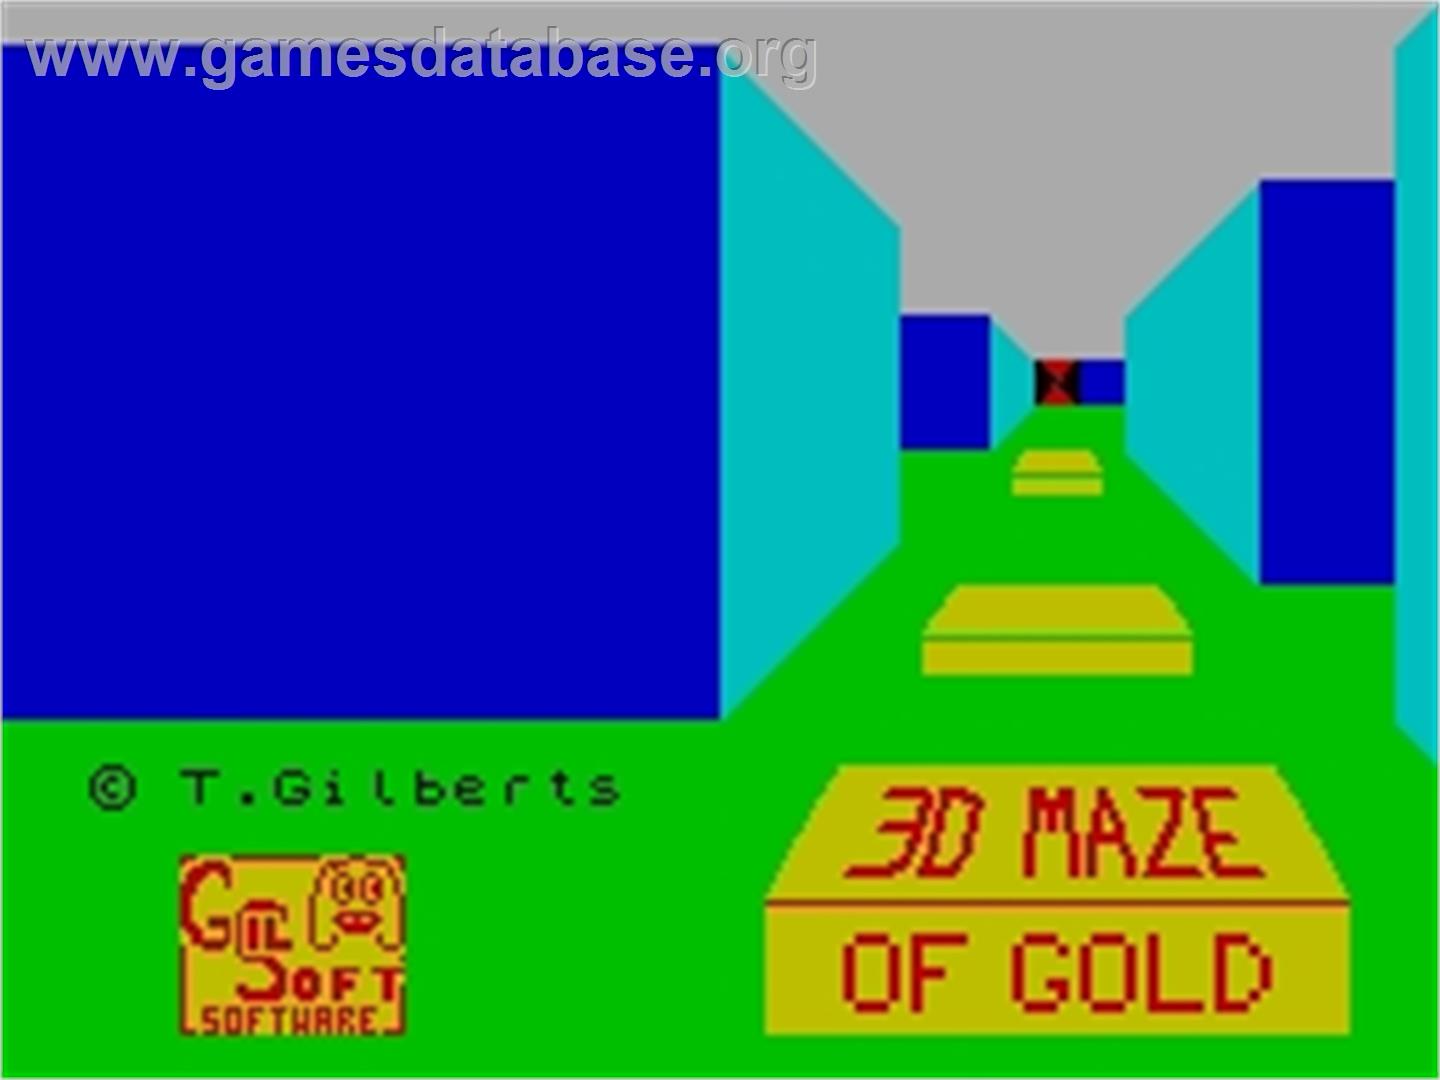 3D Maze of Gold - Sinclair ZX Spectrum - Artwork - Title Screen